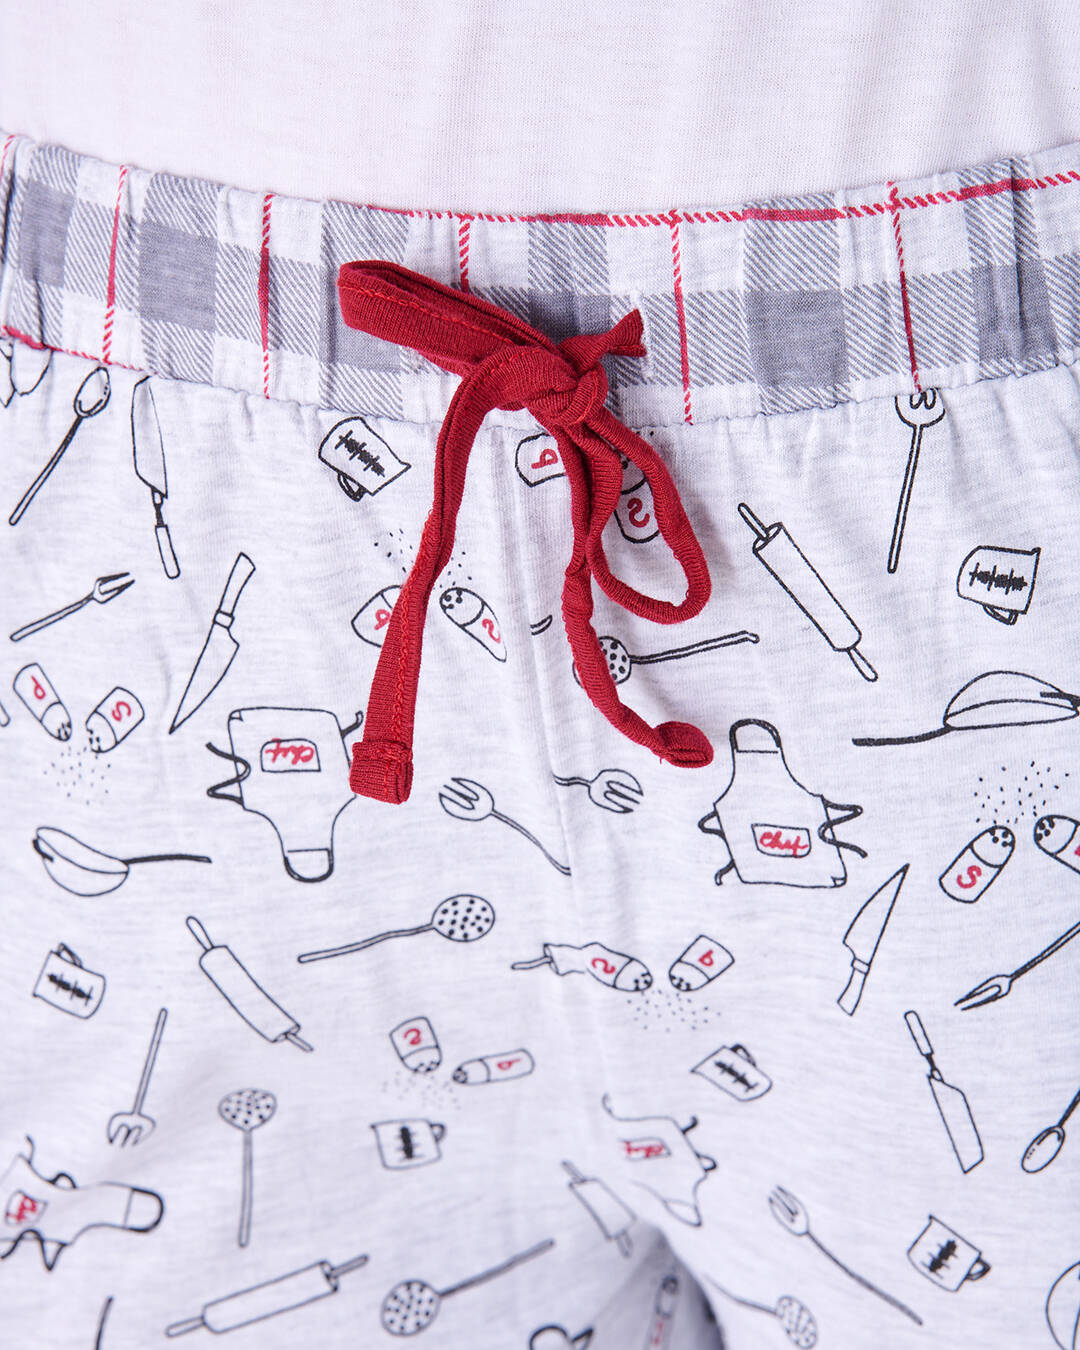 Dettaglio dei disegni sul pantaloncino del pigiama a maniche e gamba corta da donna "Cook"